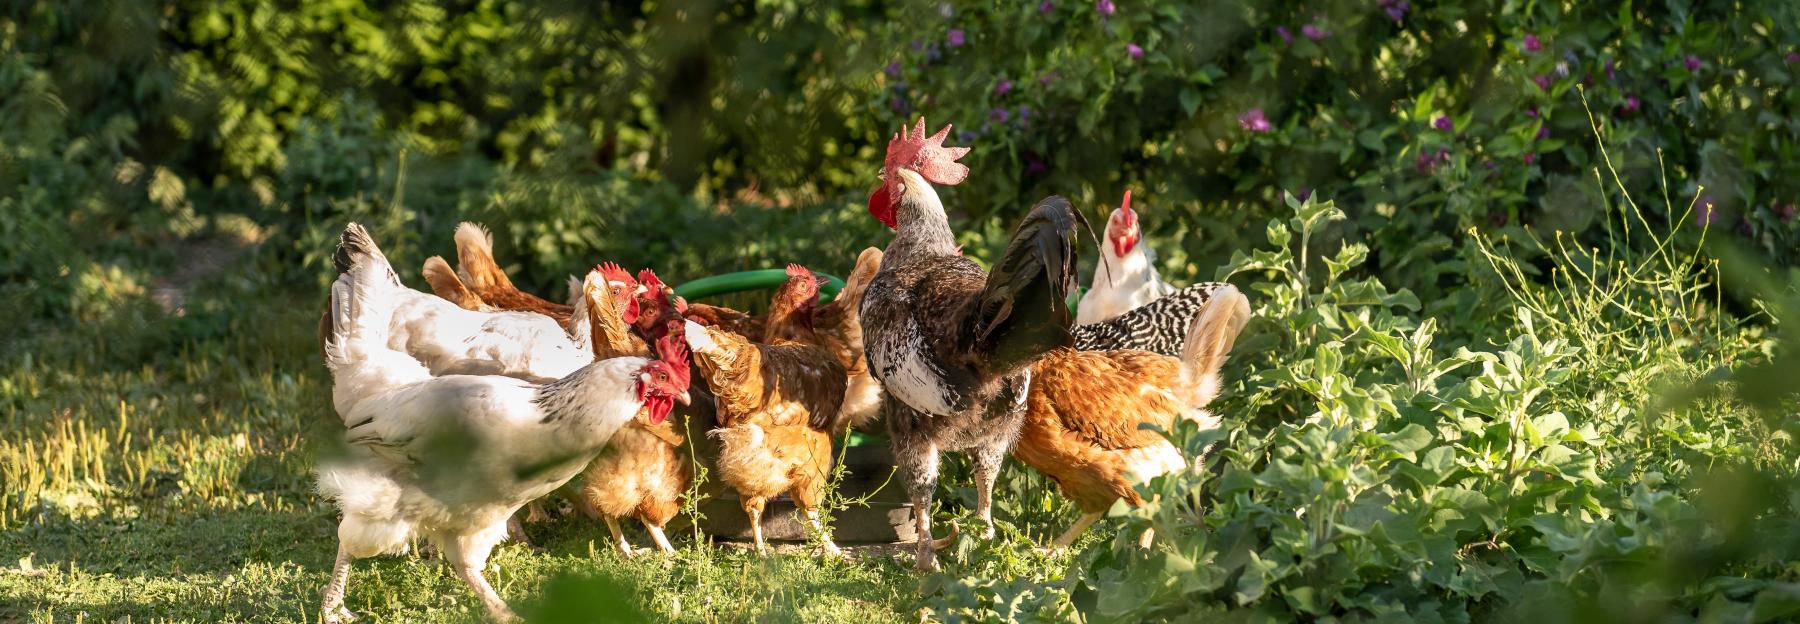 artgerechte Haltung von Hühnern im Freiland in kleinen Gruppen mit Hahn